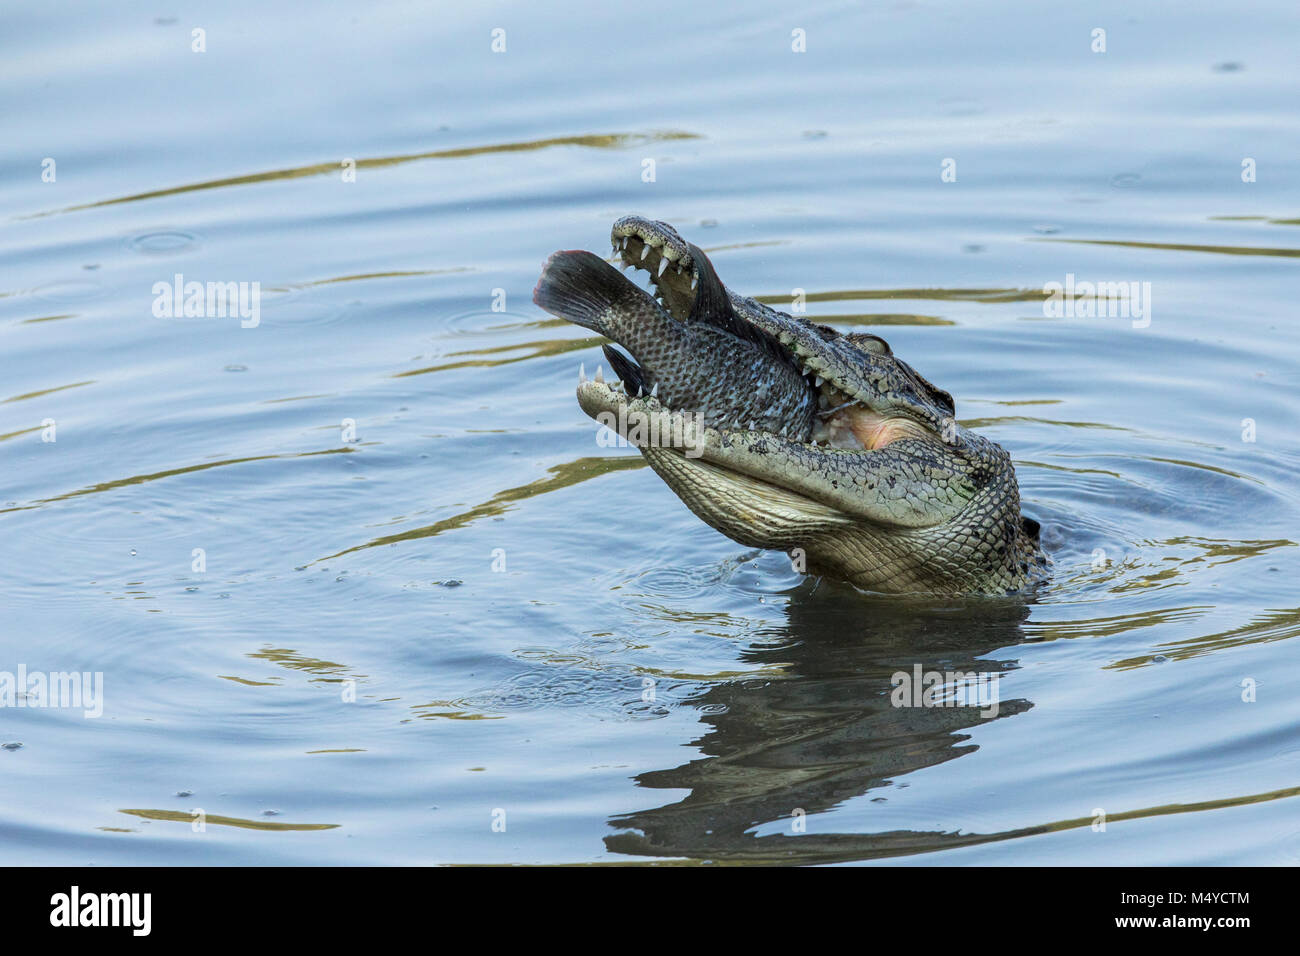 Eine wilde Salzwasser krokodil Fütterung auf ein Fisch in der Sungei Buloh Wetland Reserve in Singapur Stockfoto